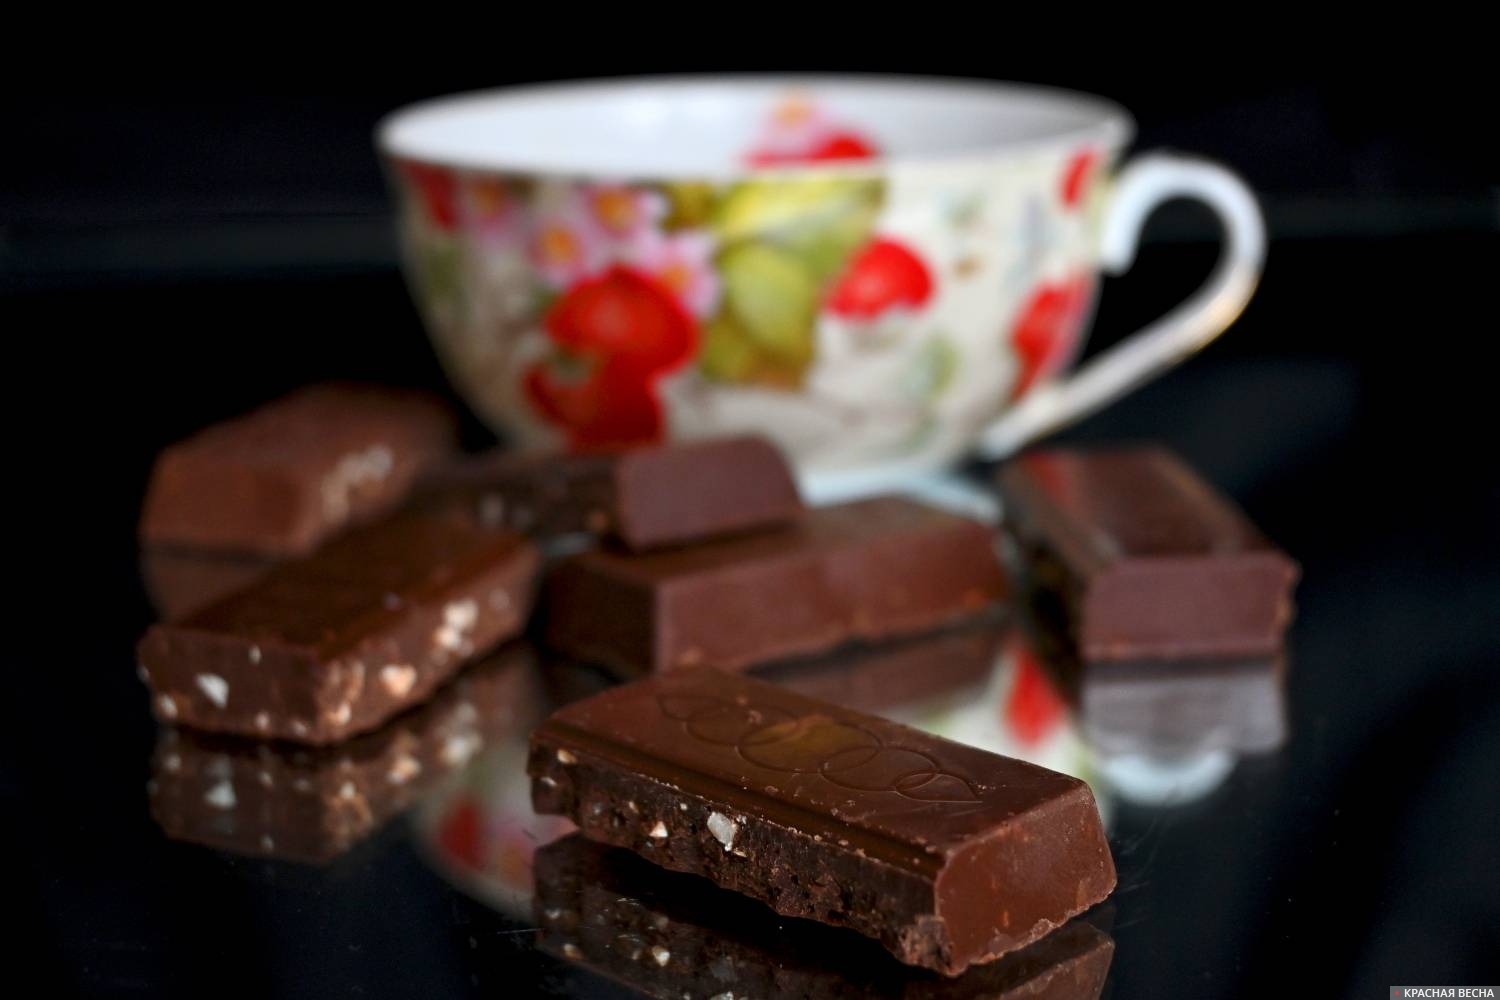 Купить шоко. Шоколад Слава. Шоколадка на Кирова в Самаре. Шоколад купить. Тупла шоколад купить.